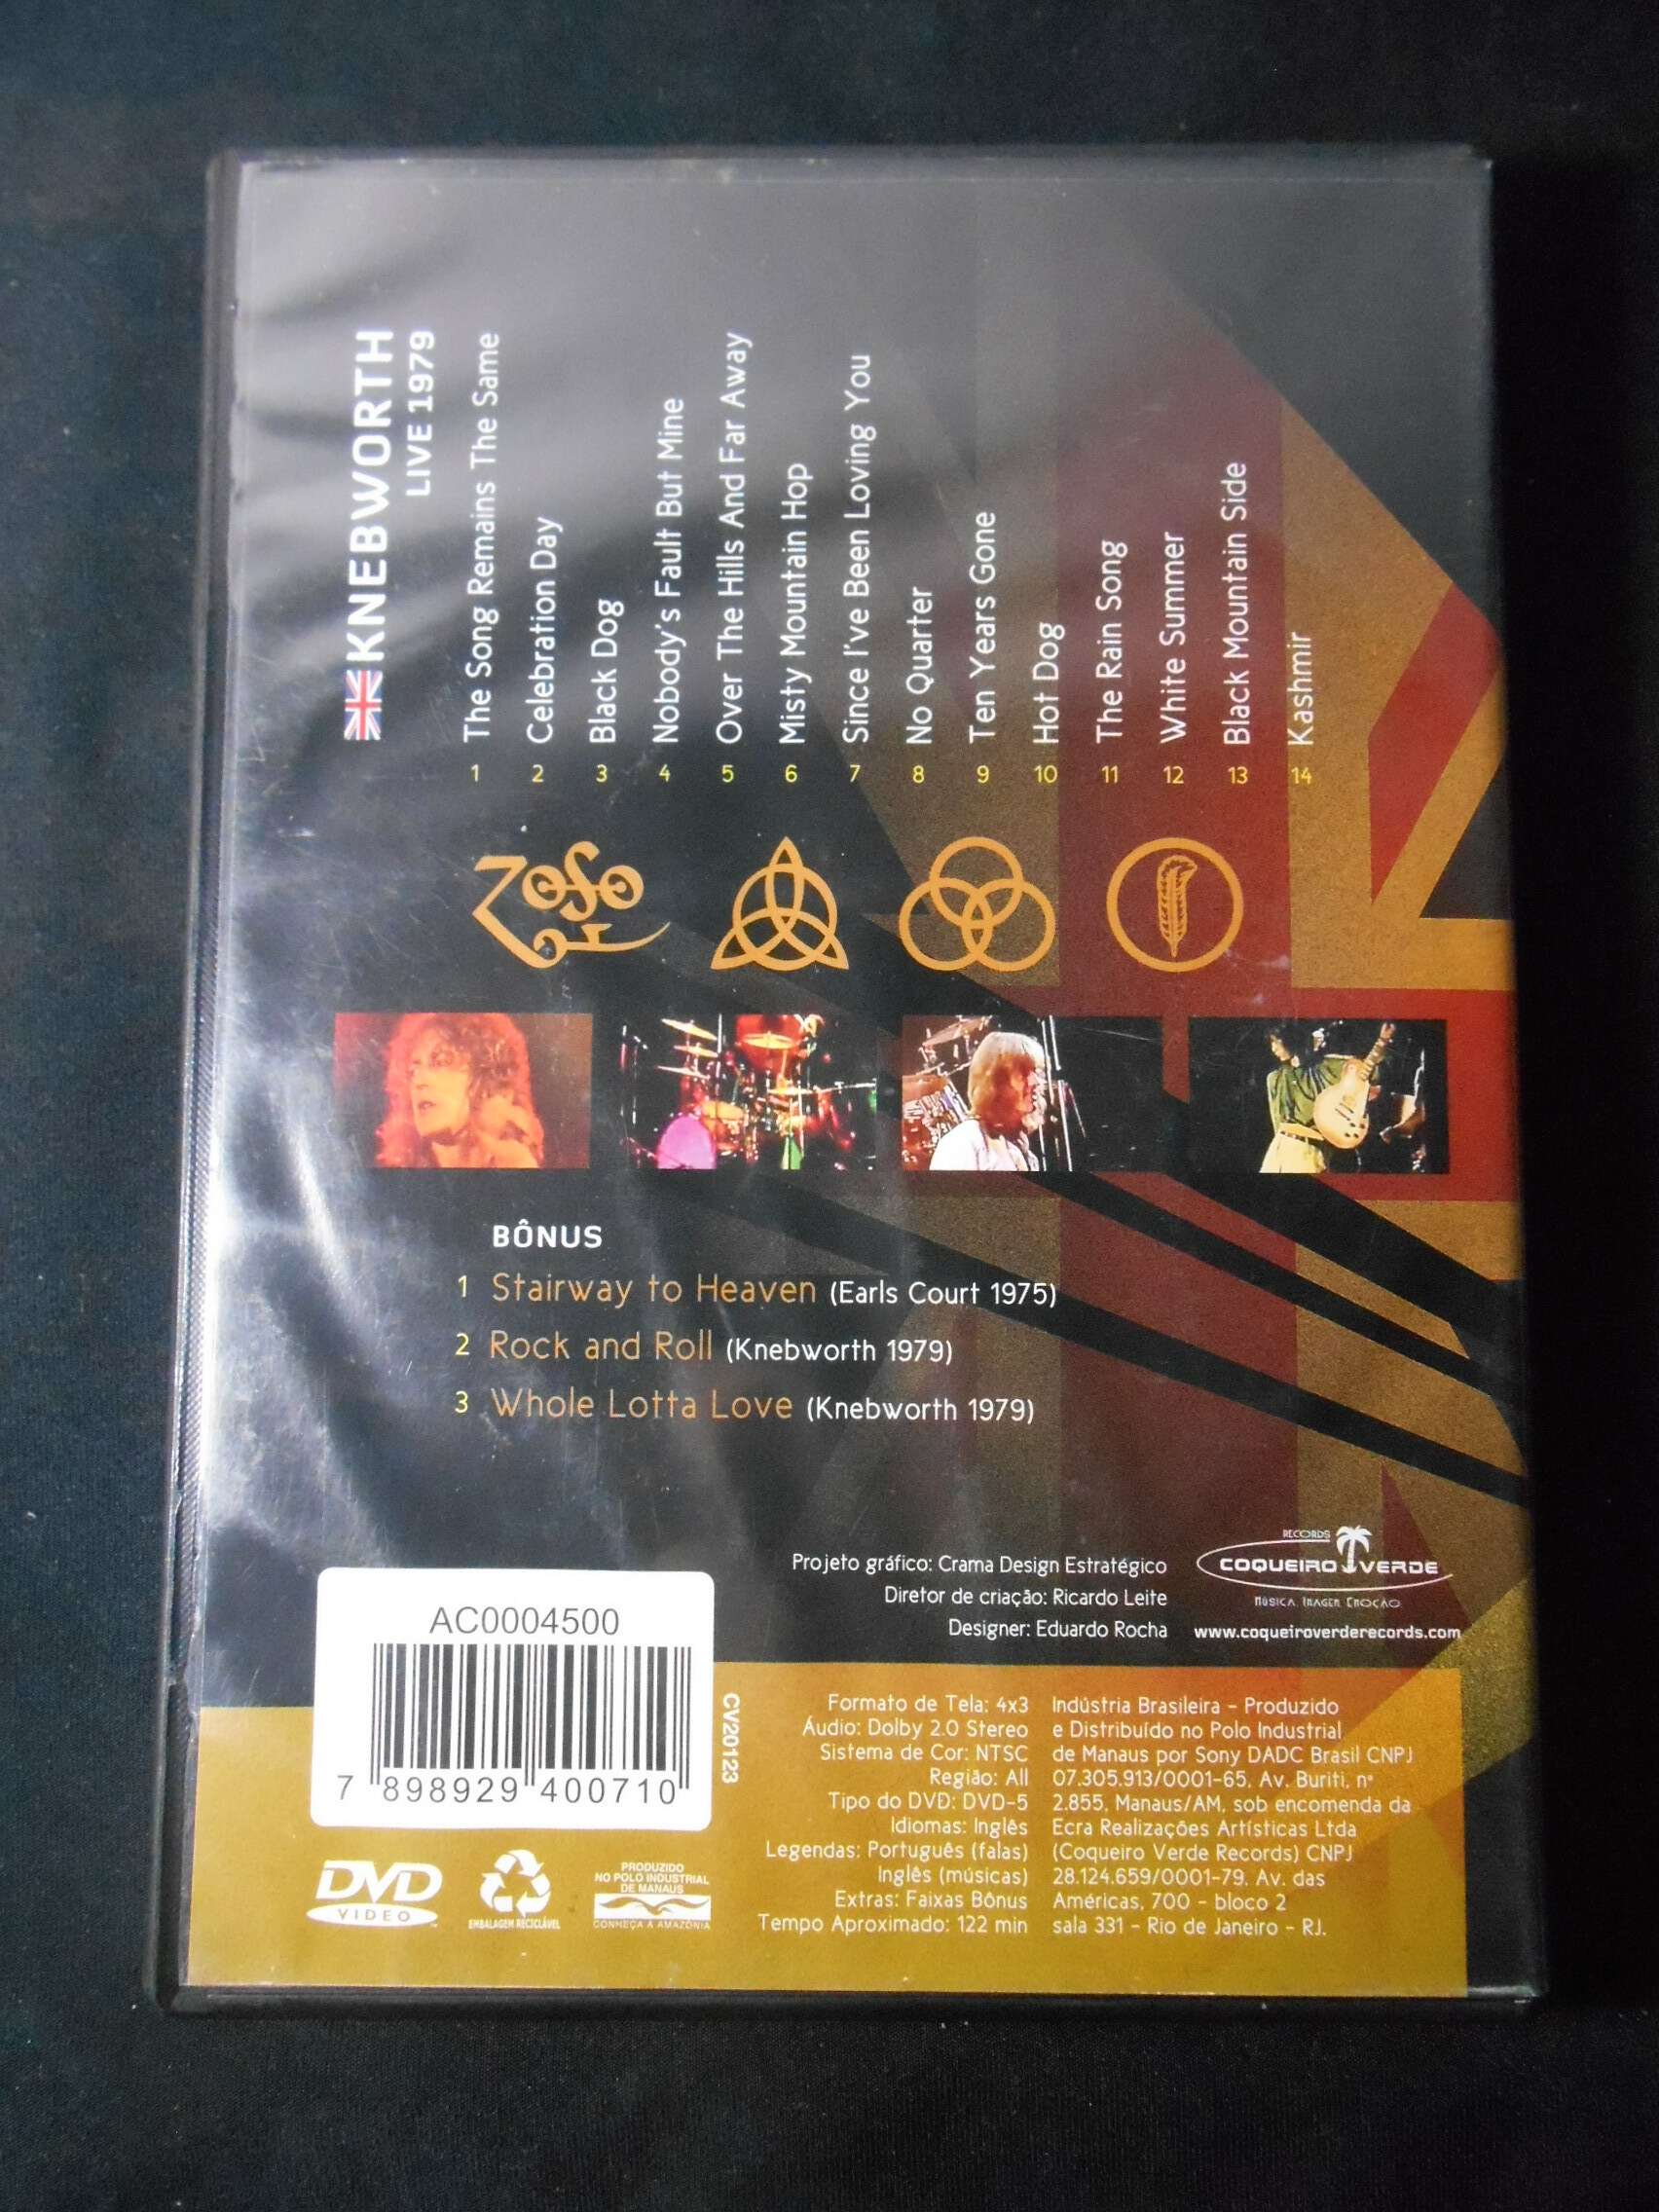 DVD - Led Zeppelin - Knebworth Live 1979